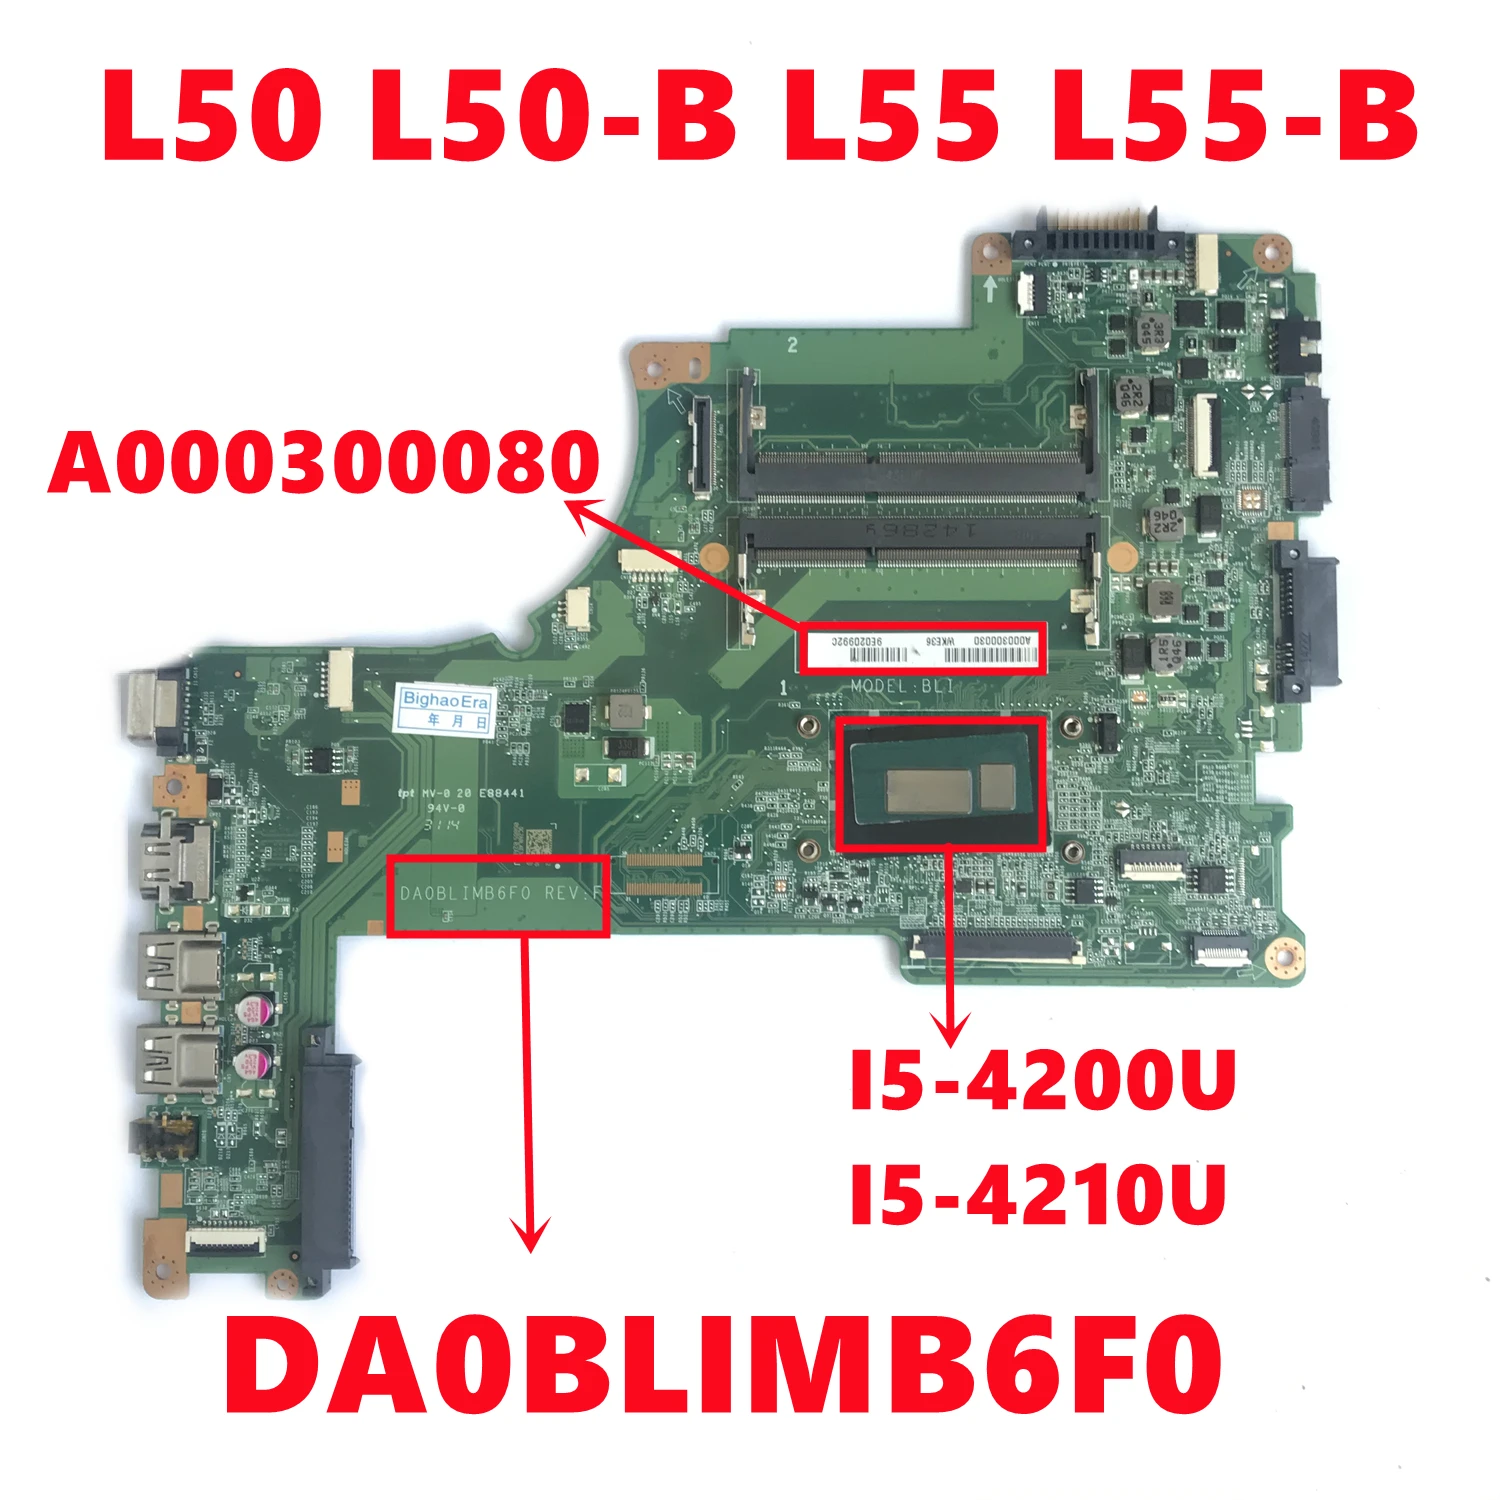 

A000300080 For TOSHIBA Satellite L50 L50-B L55 L55-B Laptop Motherboard DA0BLIMB6F0 Mainboard With I5-4200U I5-4210U 100% Tested